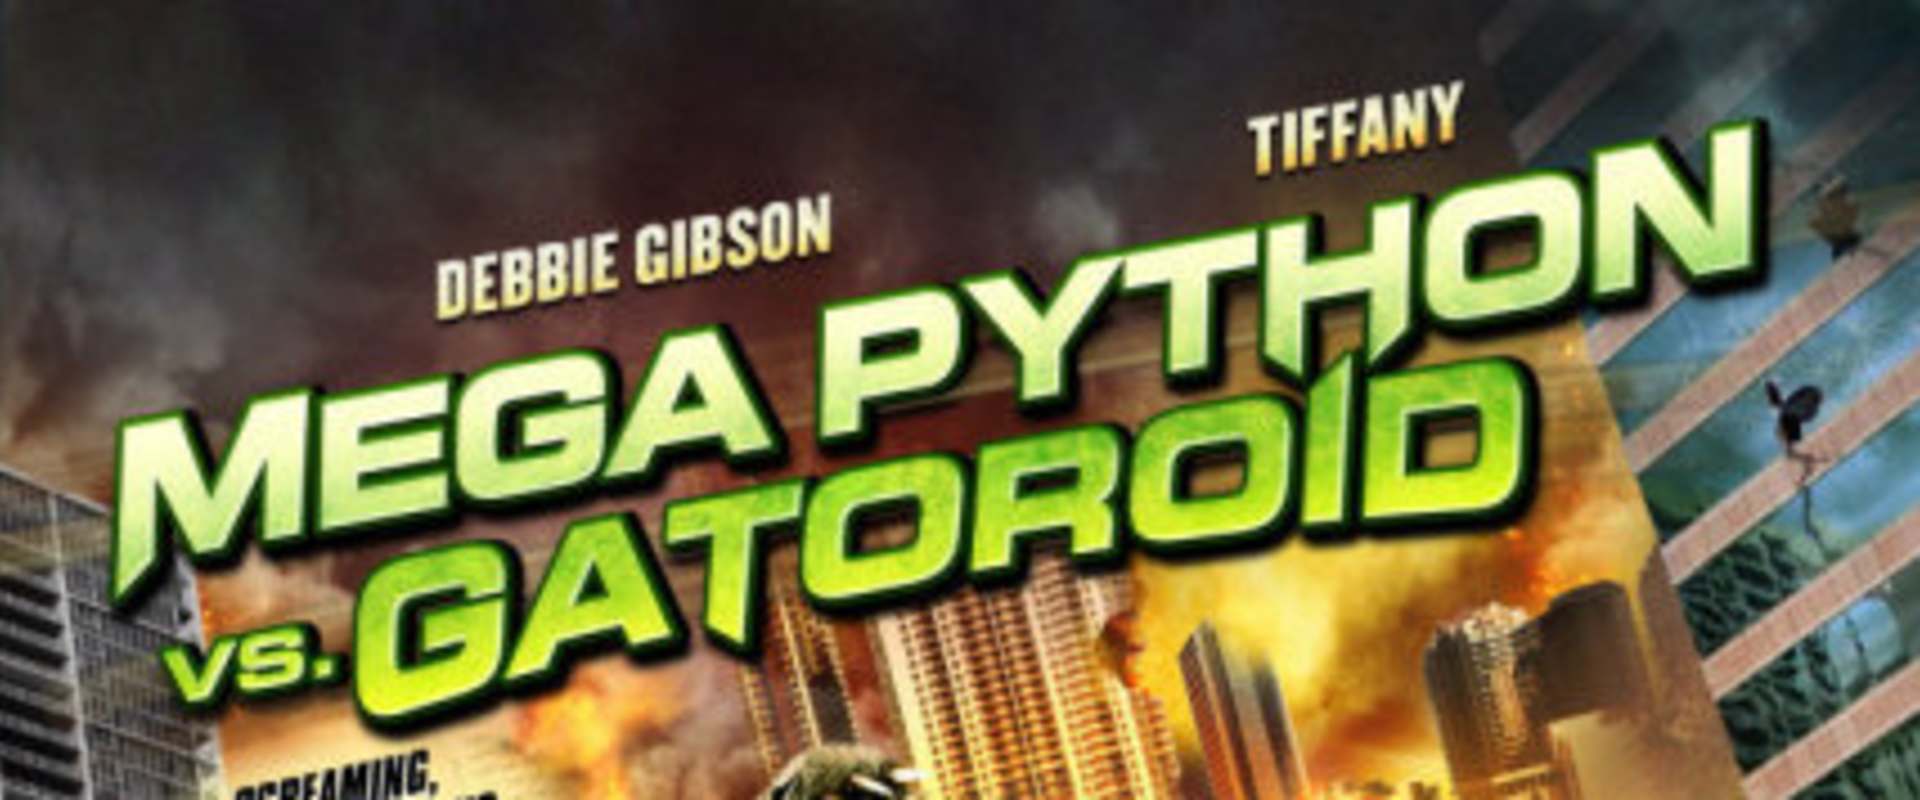 Mega Python vs. Gatoroid background 1